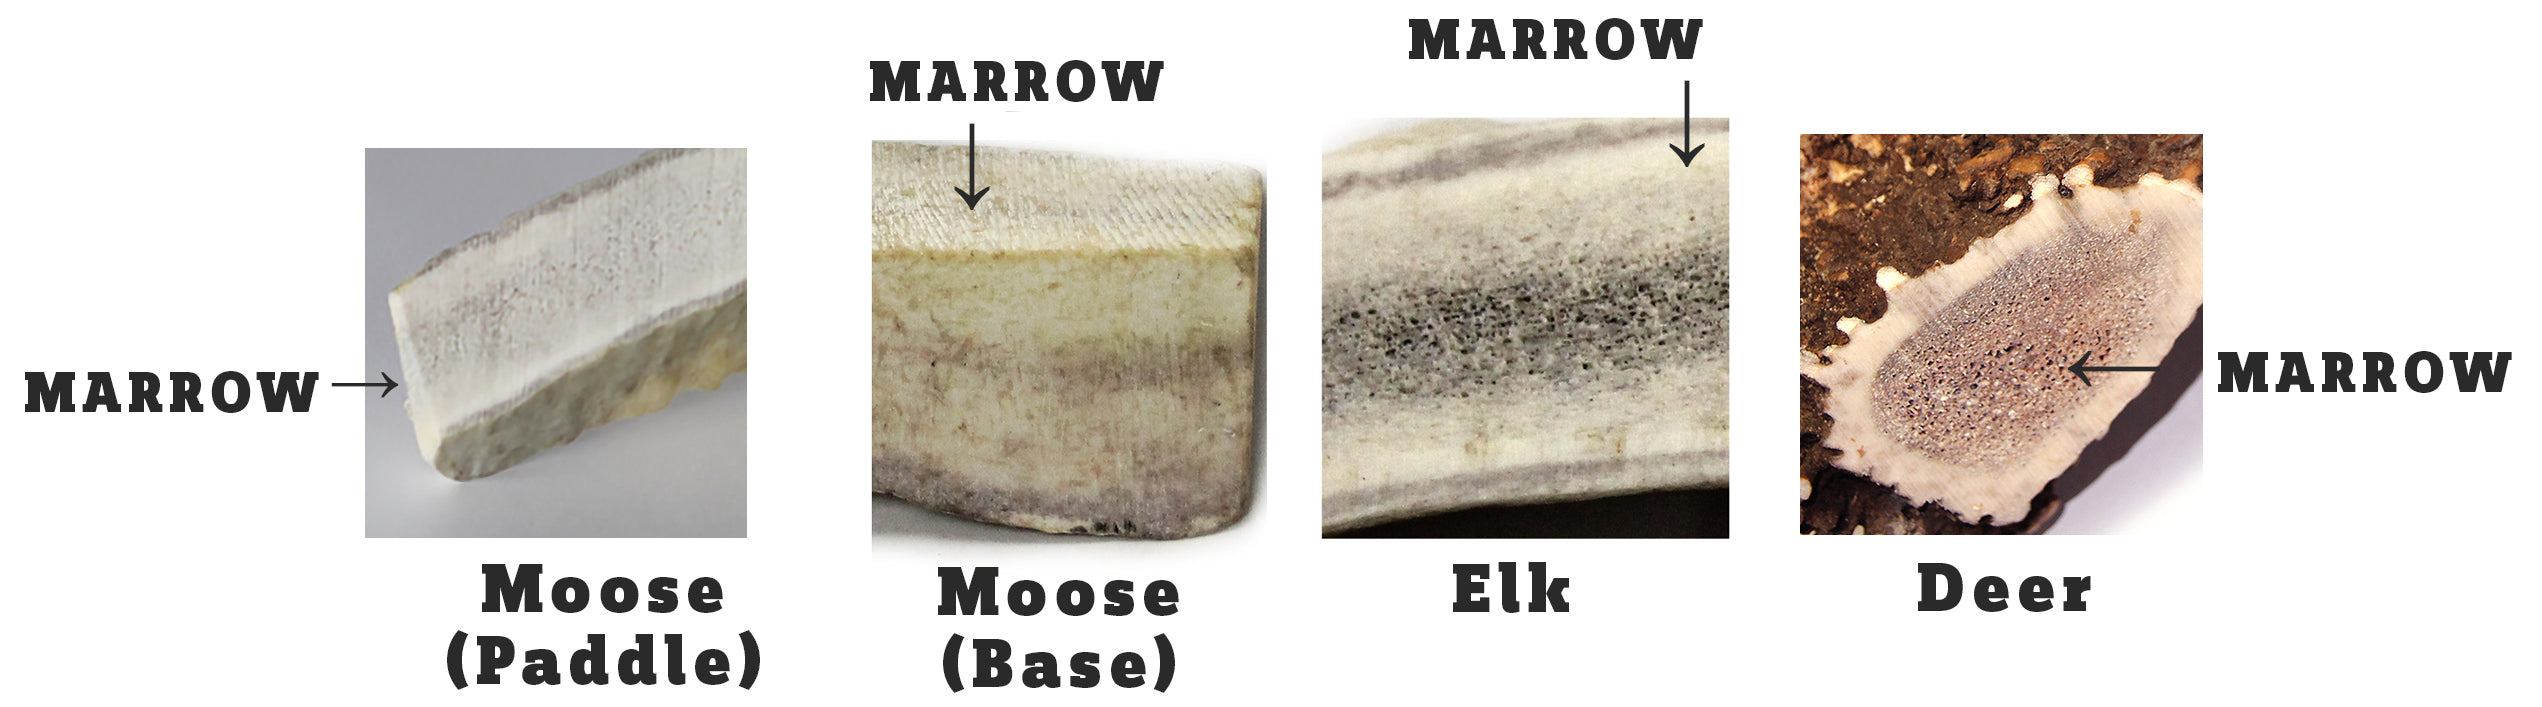 Comparing inner marrow core of moose, elk, and deer antlers